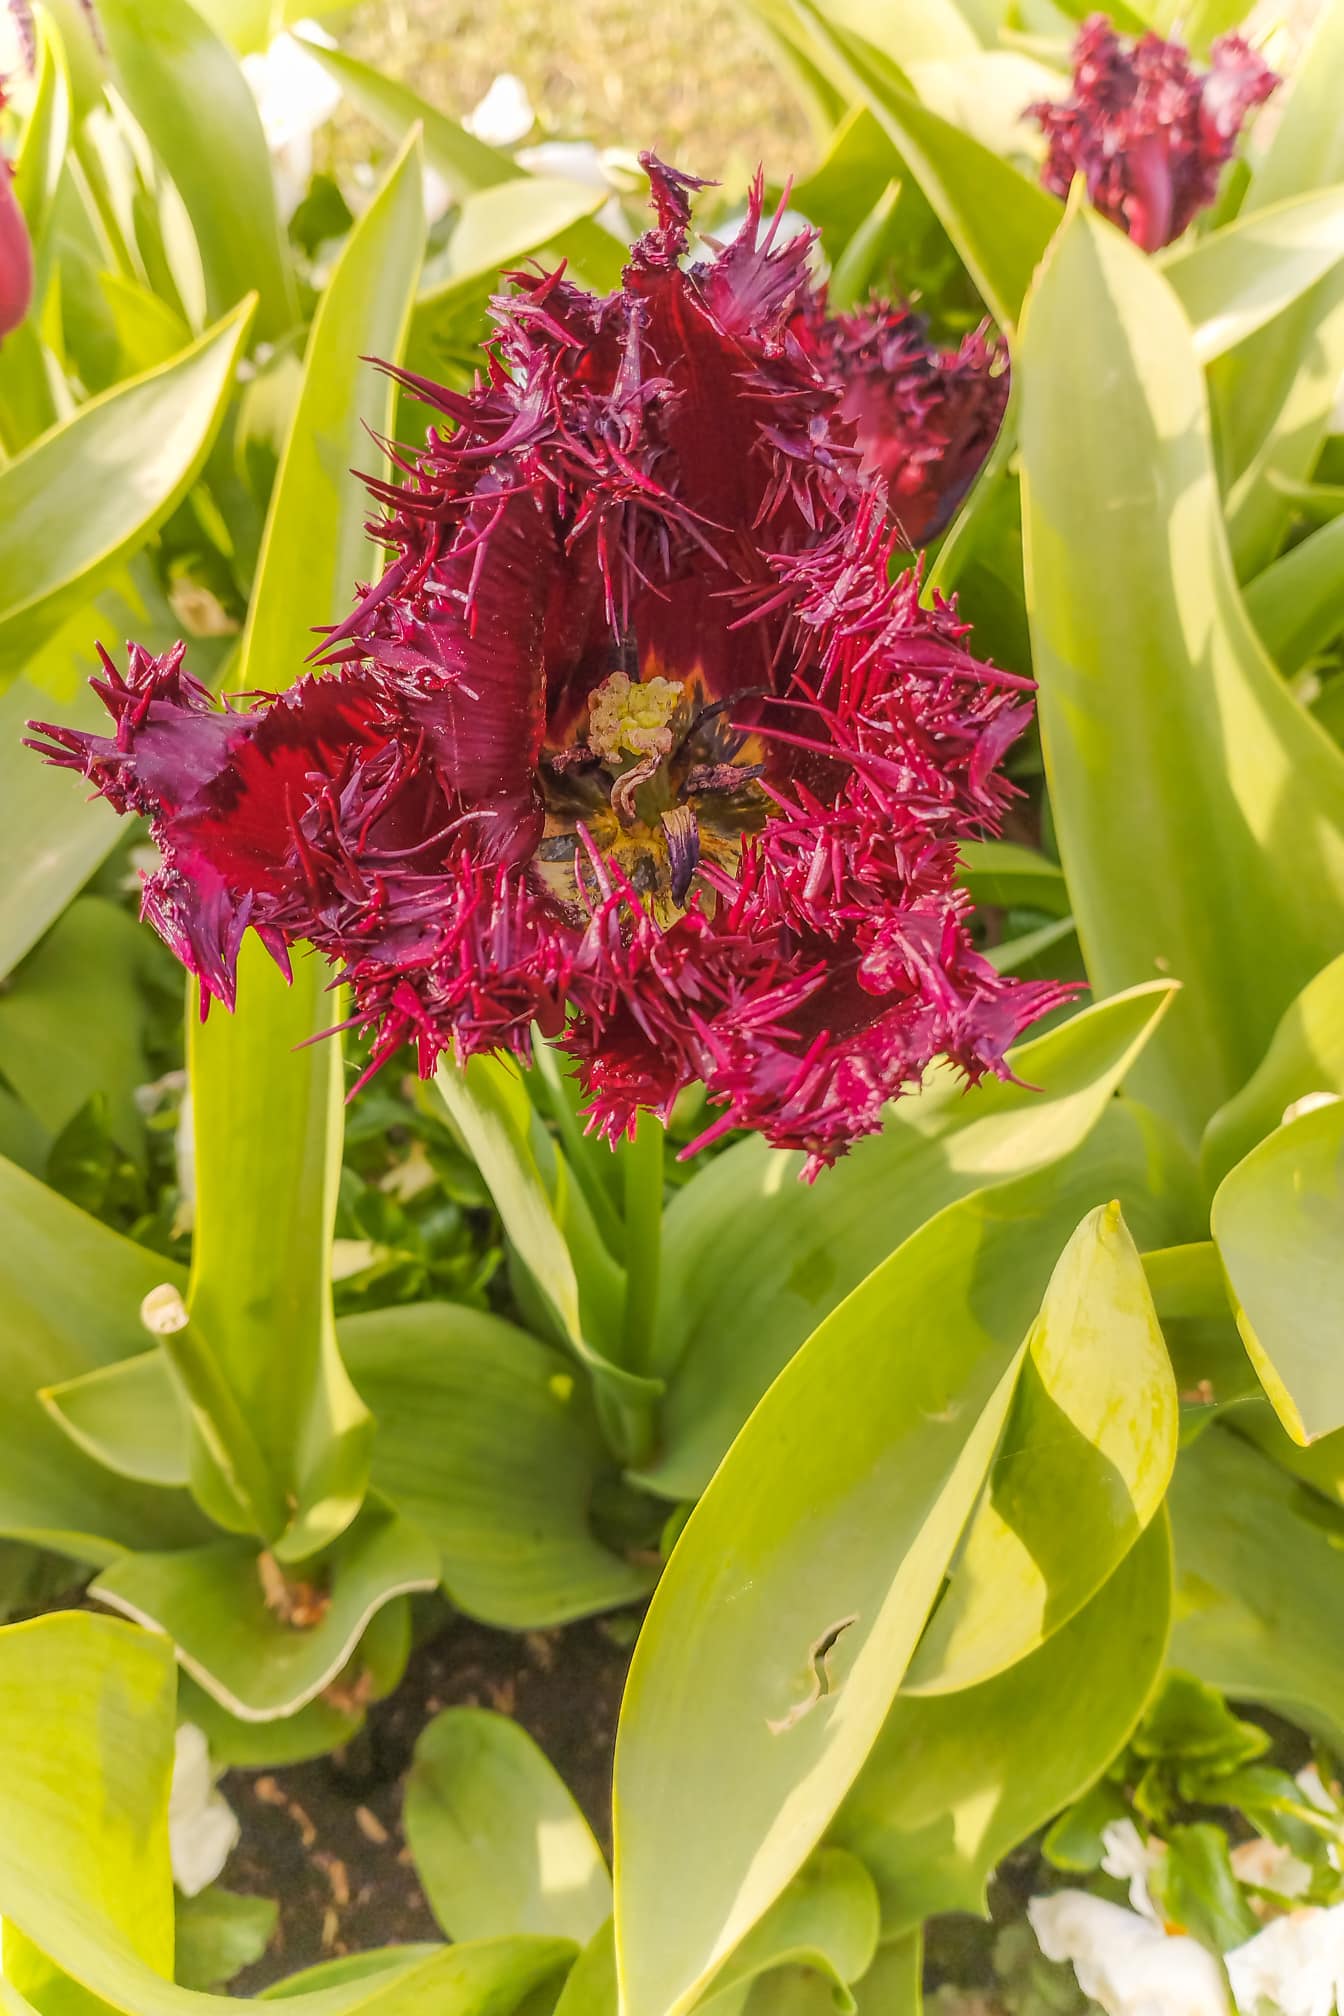 Ciemnoczerwony kwiat tulipana z kolcami, cierniami